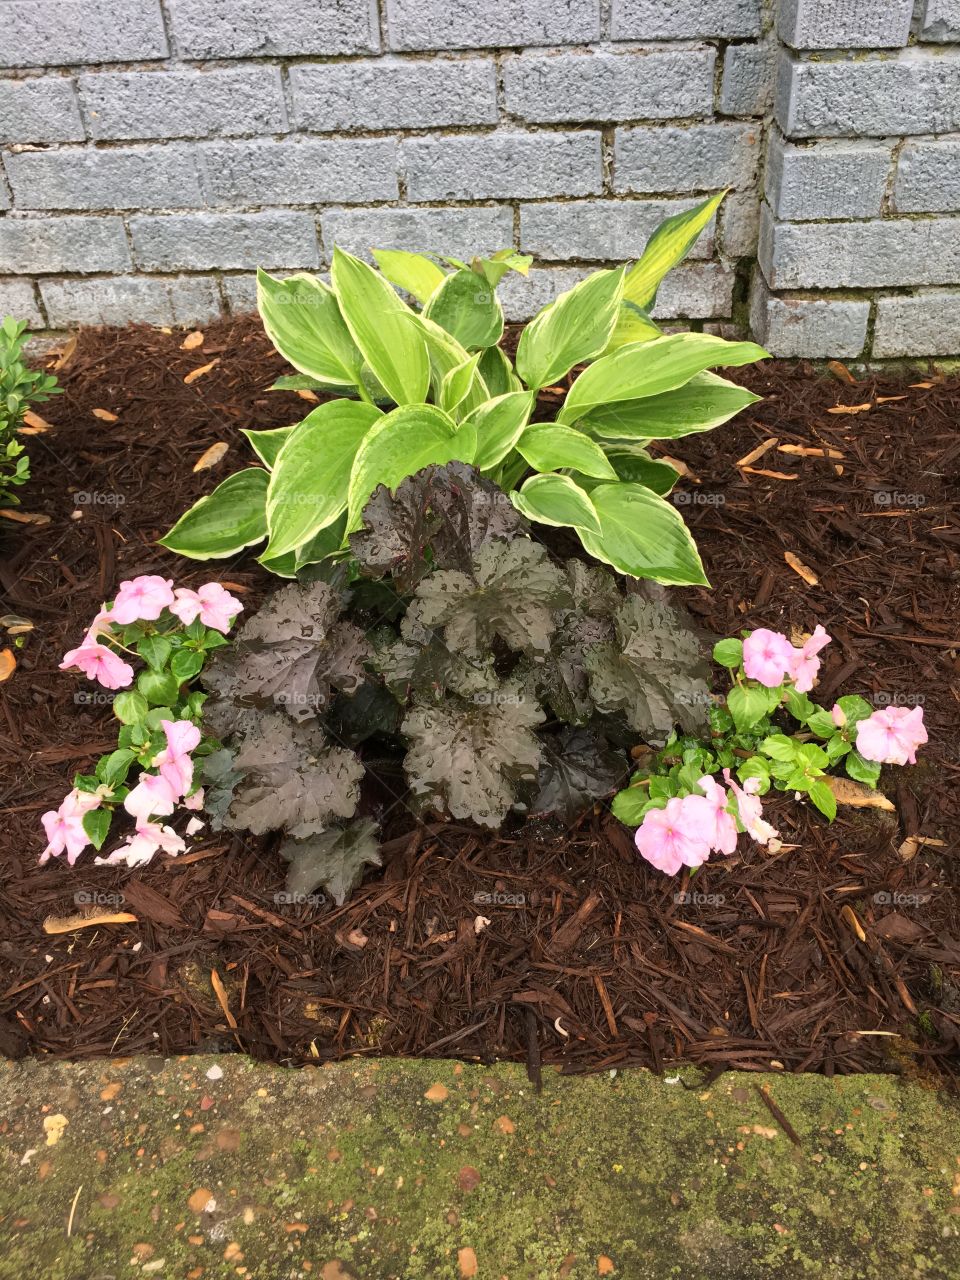 Garden arrangement